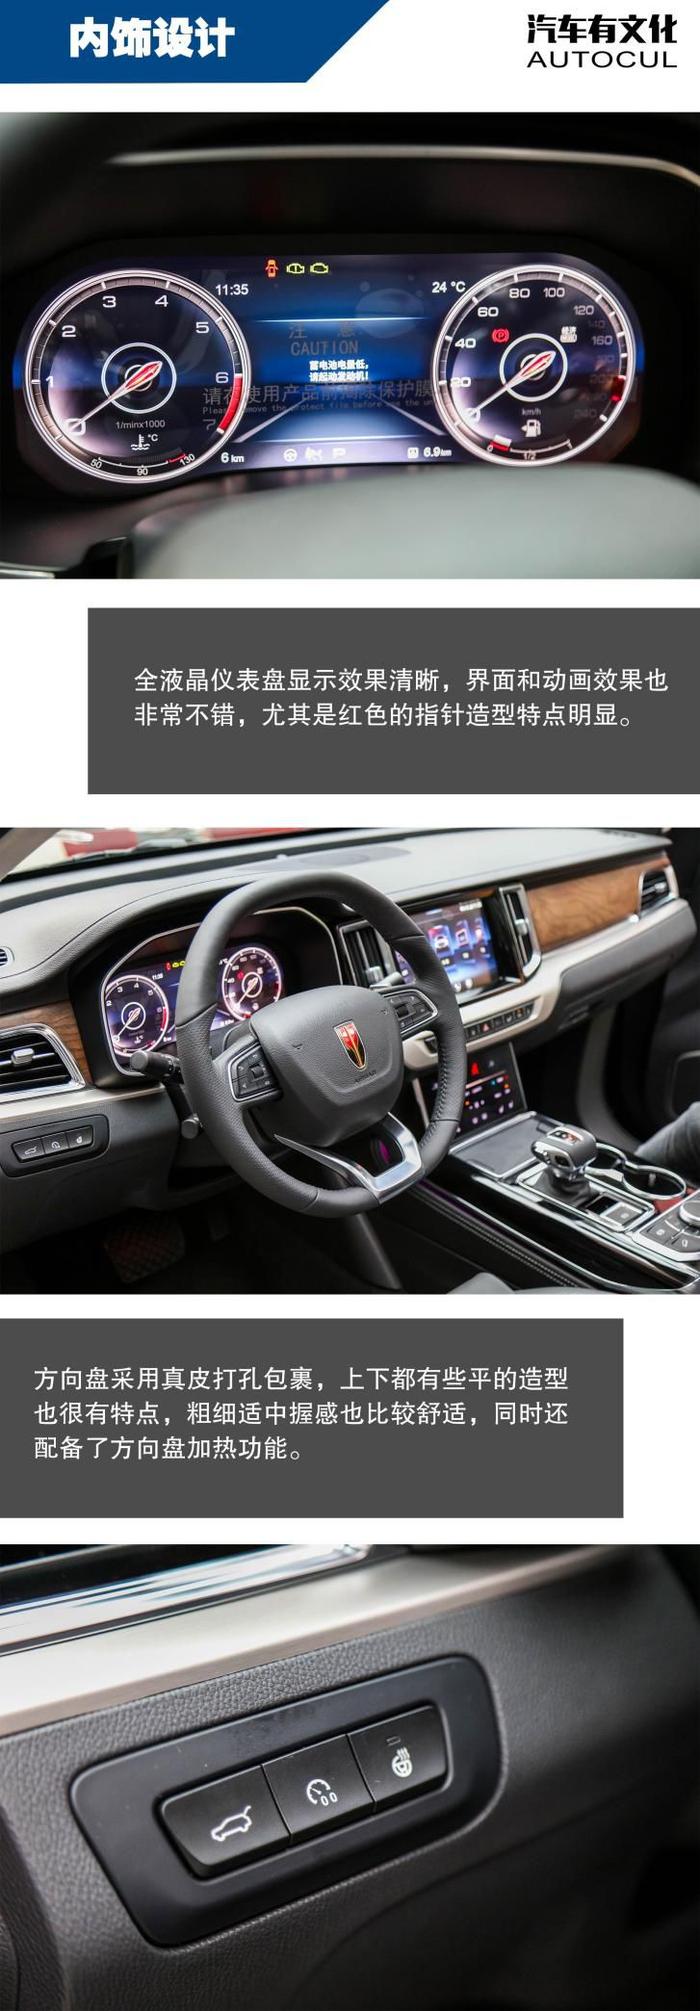 中国品牌真正的豪华SUV | 汽车有文化评测红旗HS7 3.0T